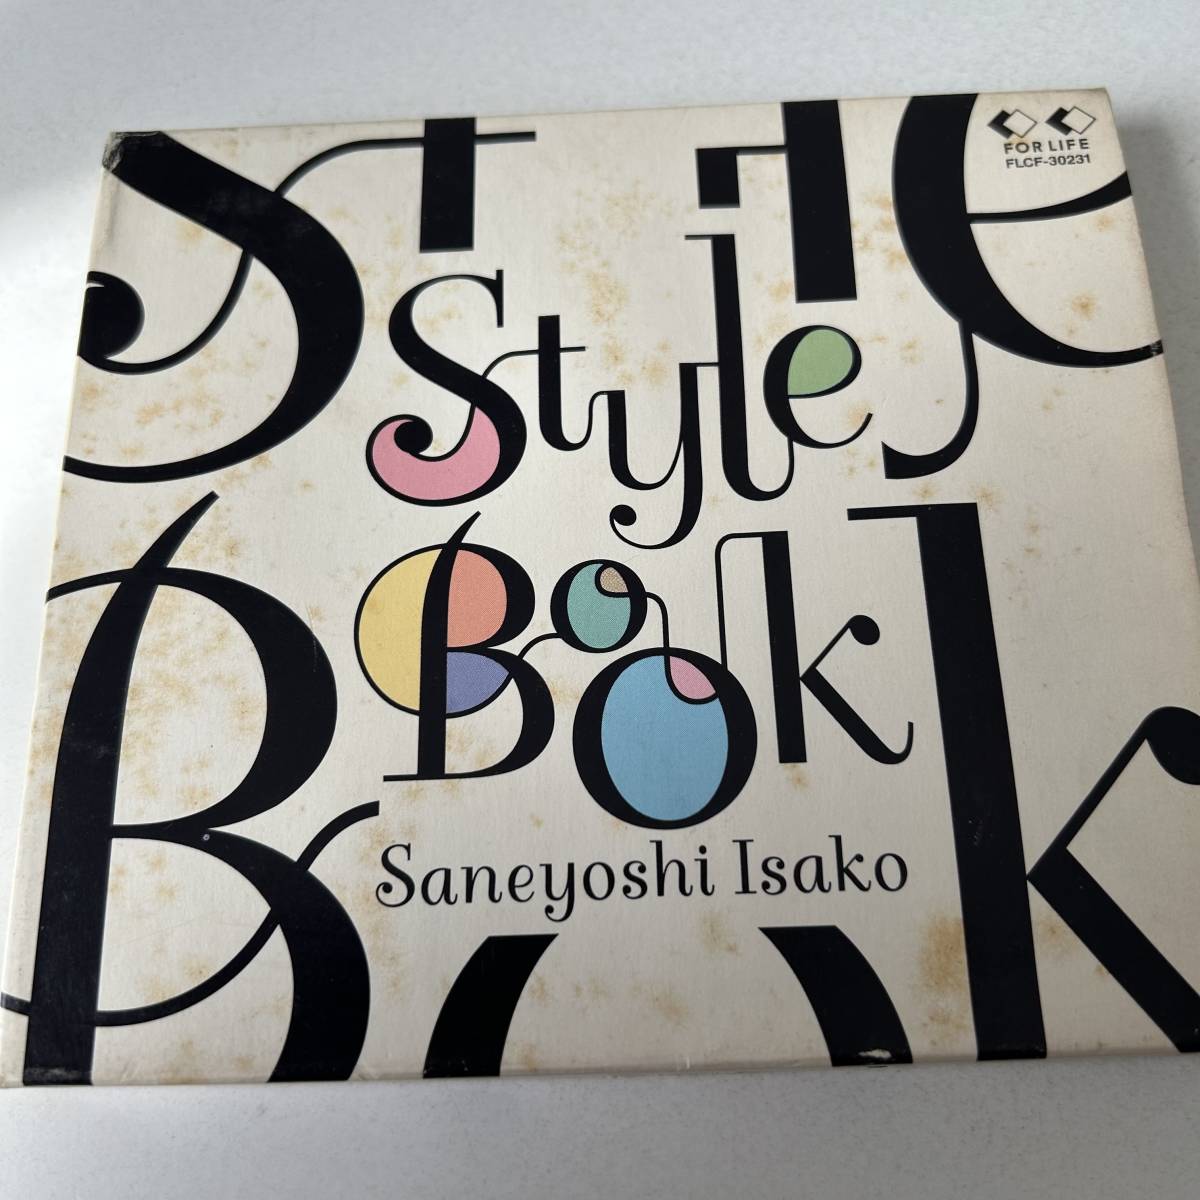  рукав кейс specification ## Saneyoshi Isako /STYLE BOOK стиль * книжка ## лучший альбом 